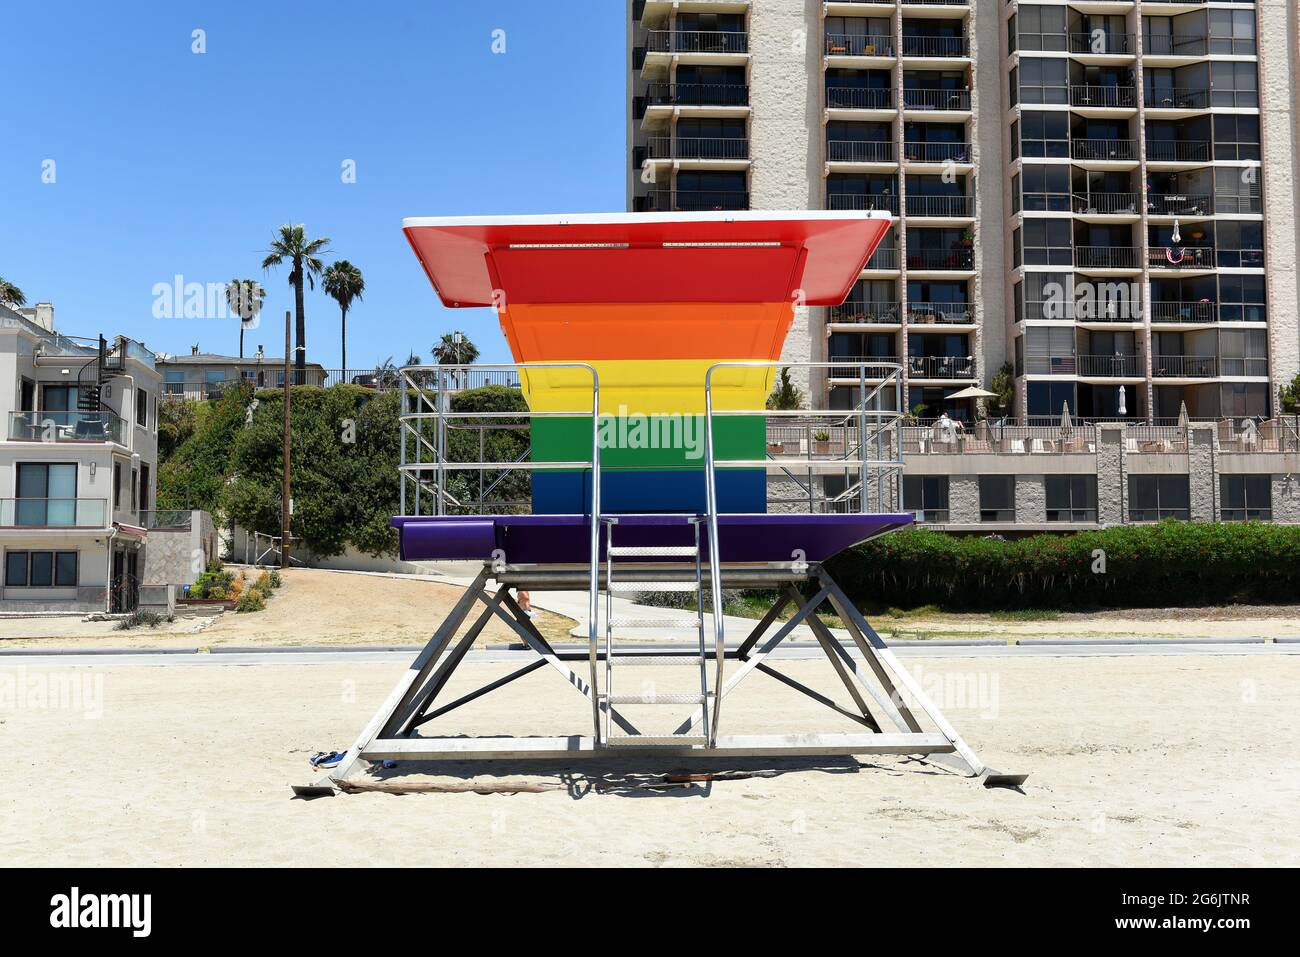 LONG BEACH, CALIF - 5 JUL 2021: Pride Tower, en Shoreline Way y 12th PL. La torre de socorrista de color arco iris apoya a la comunidad LGBTQ. Foto de stock